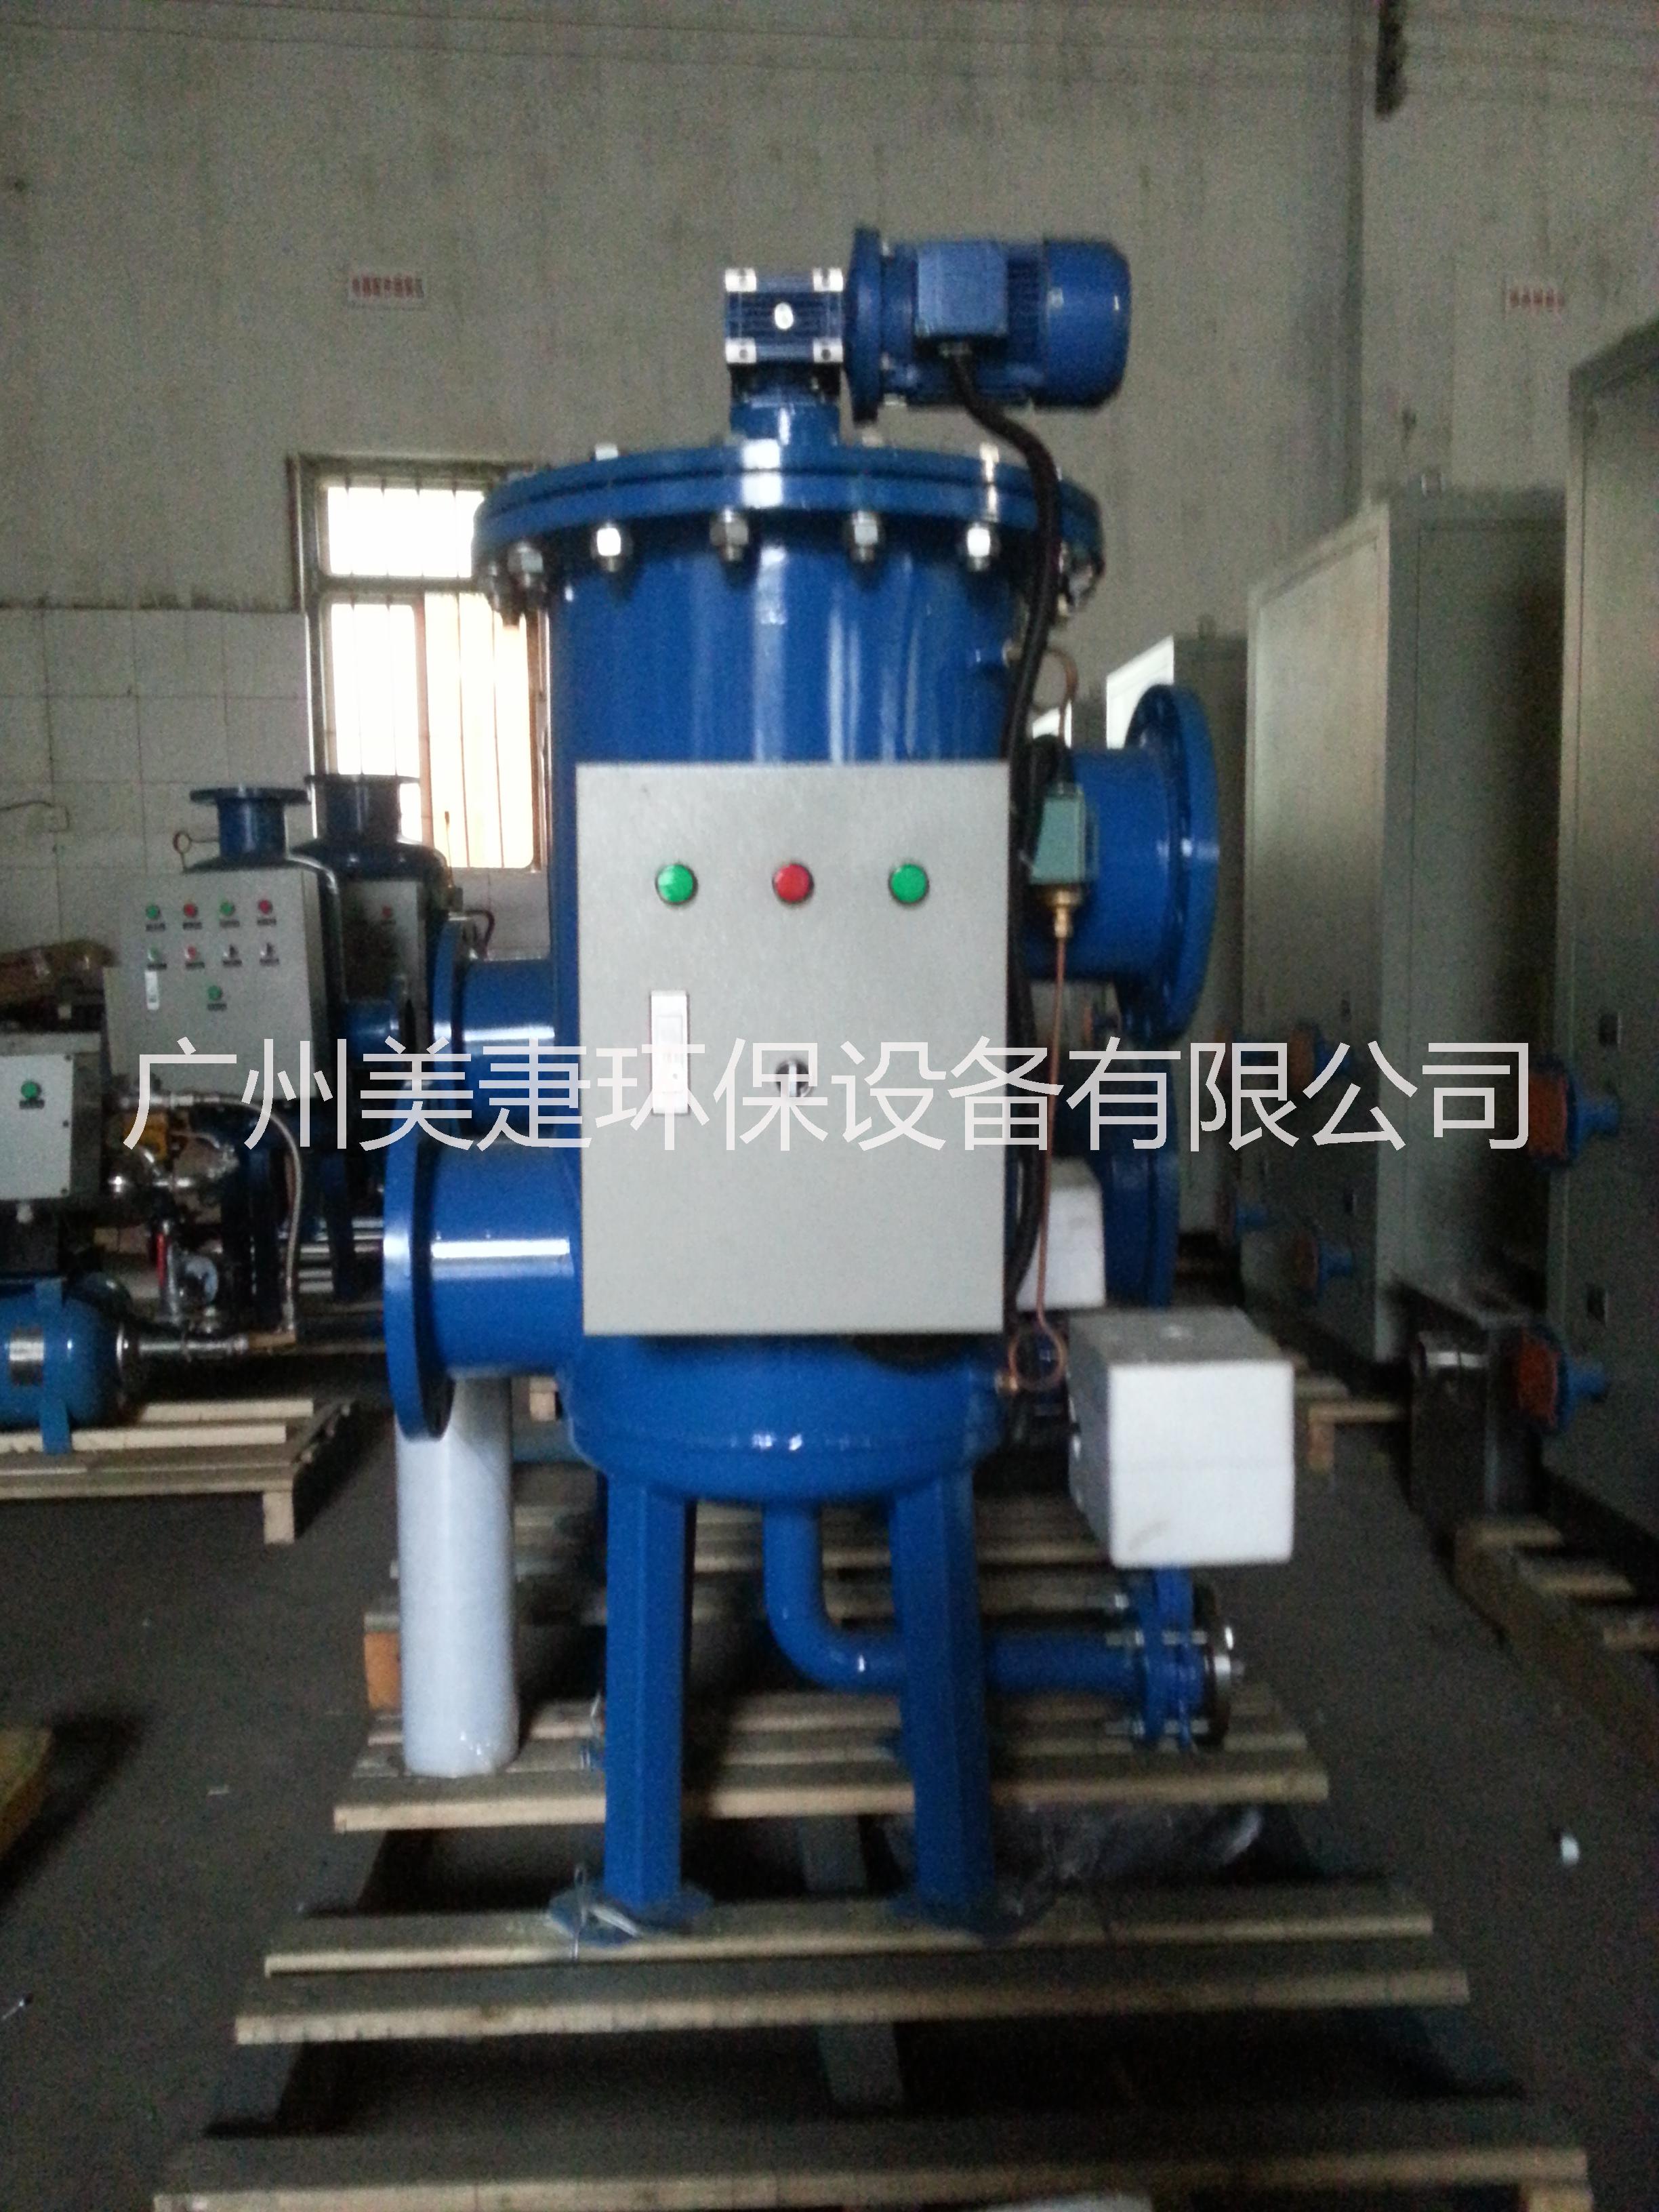 广州市多相/多虑式全程综合水处理器厂家供应发电厂专用多相/多虑式全程综合水处理器MJR-E50